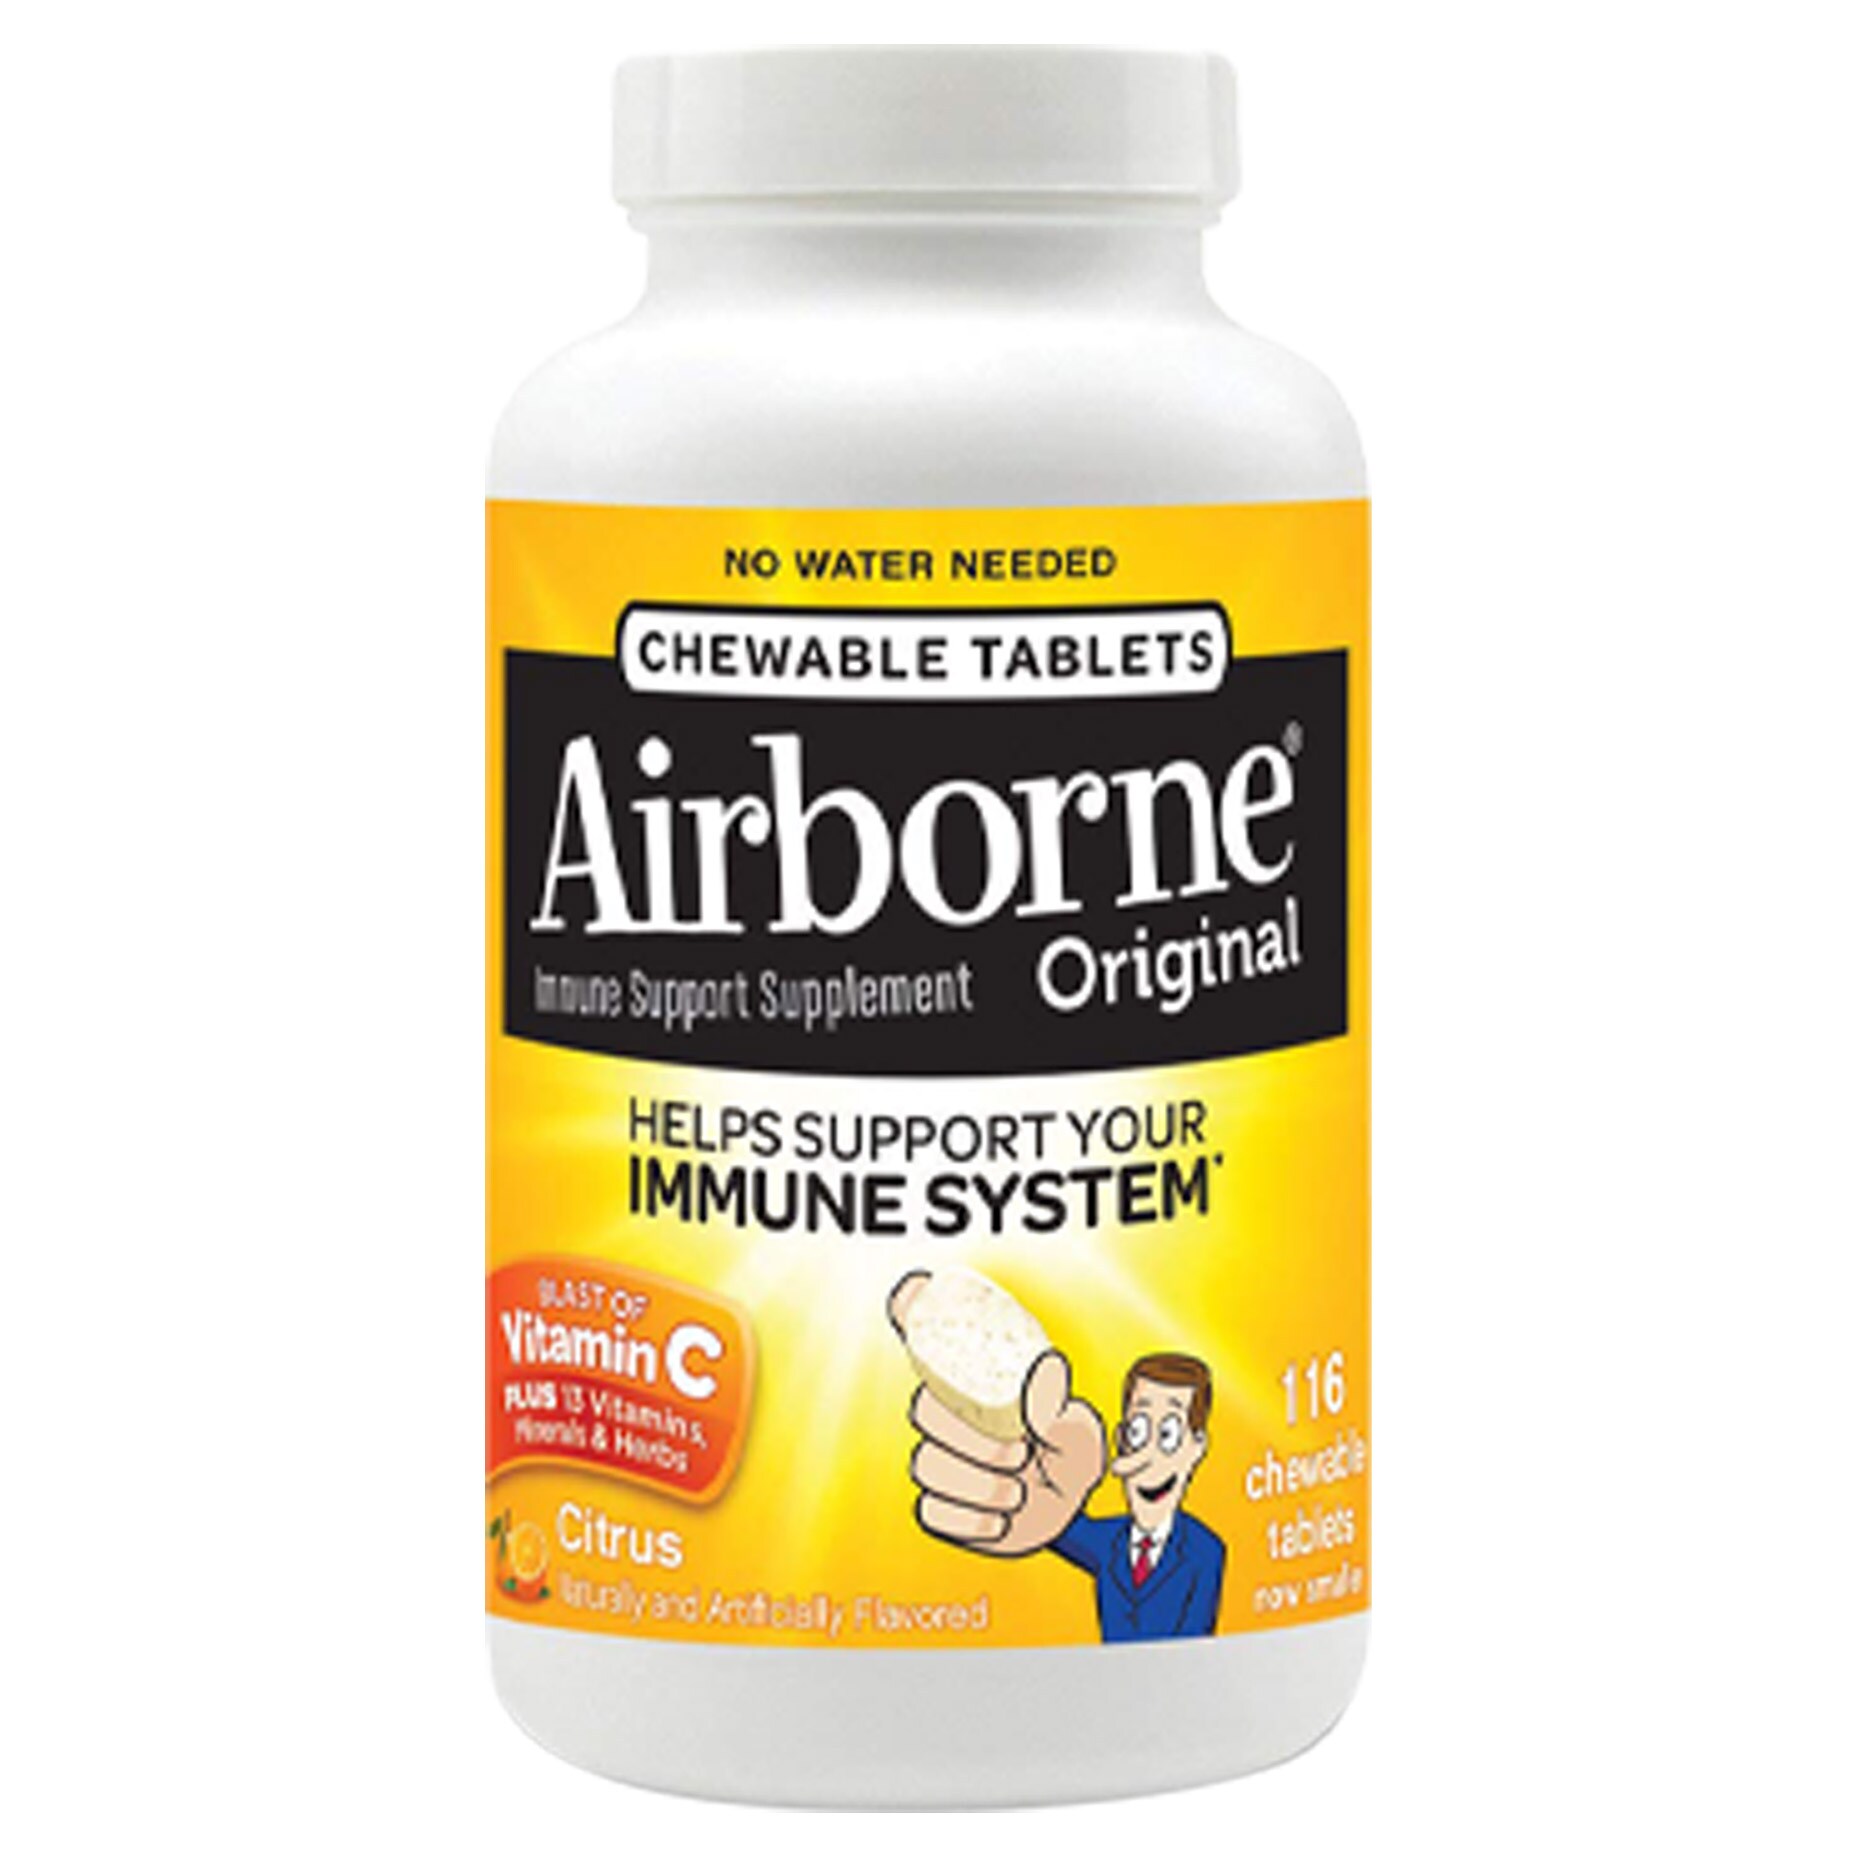 Airborne 多元维生素咀嚼片 提高免疫力